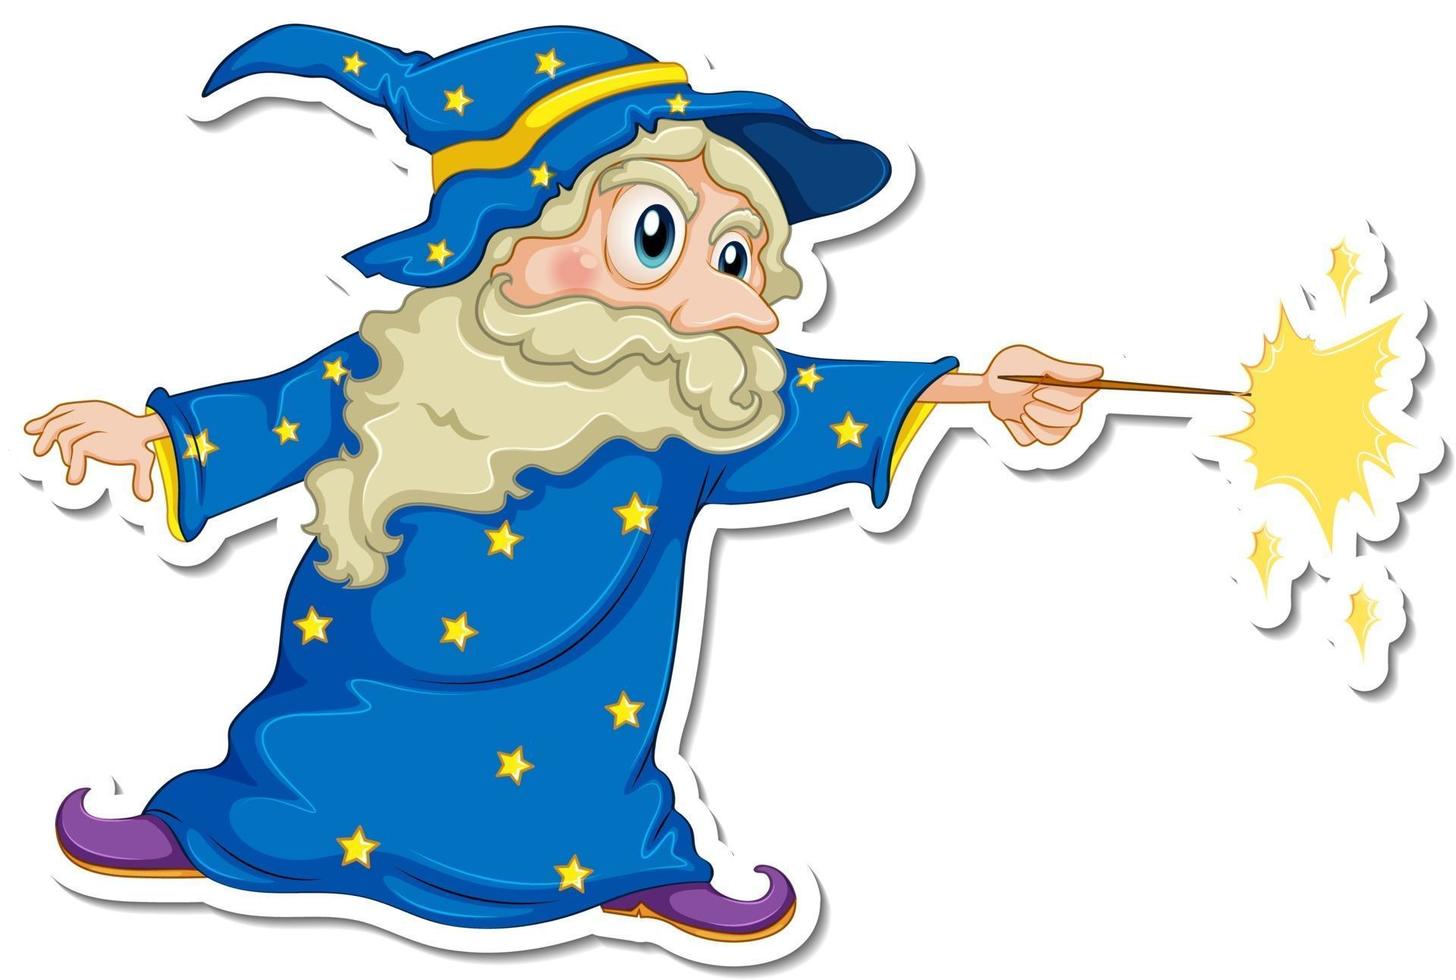 An old wizard cartoon character sticker vector